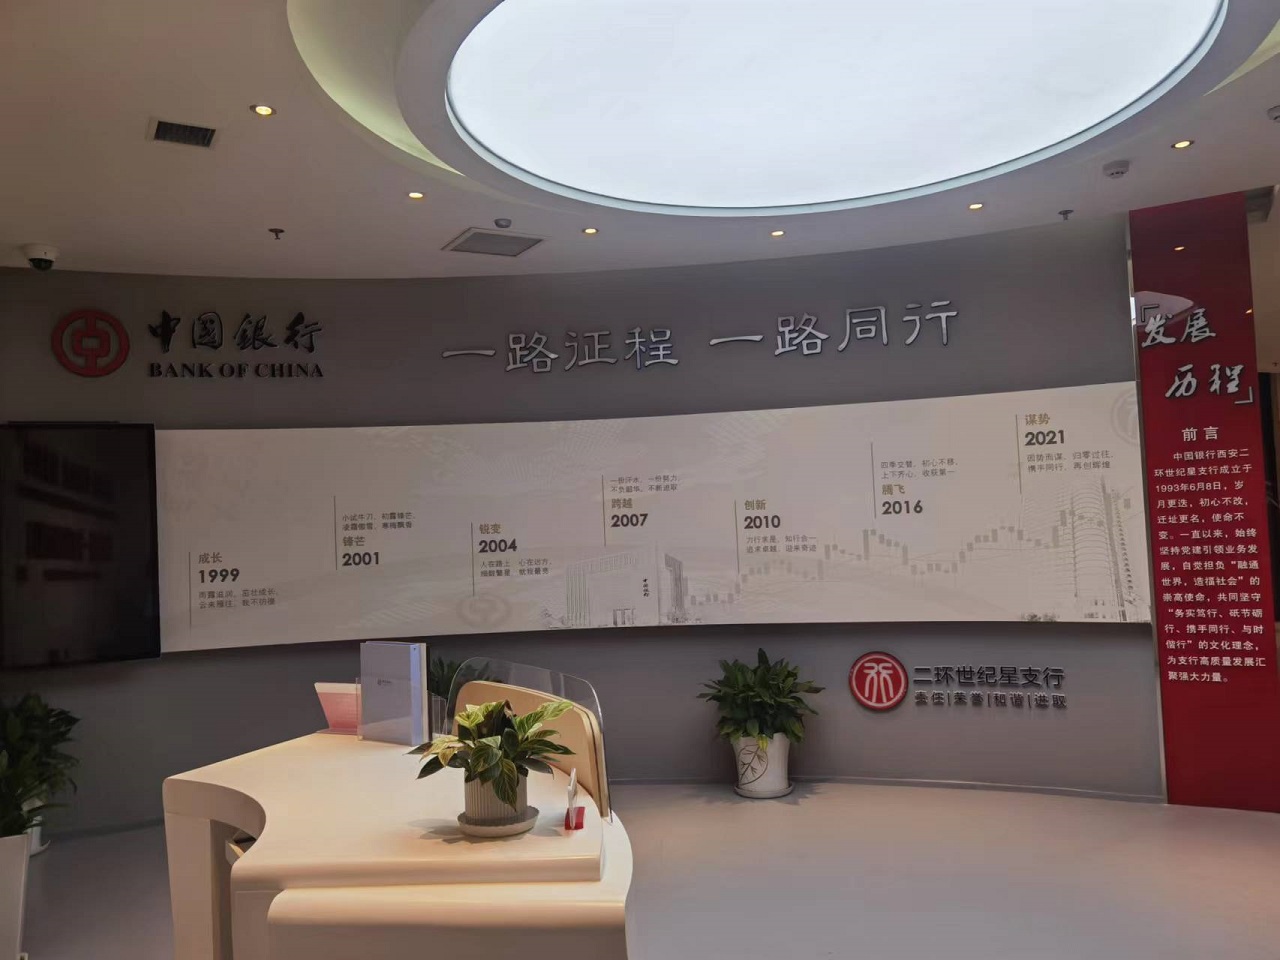 中國銀行行史展館